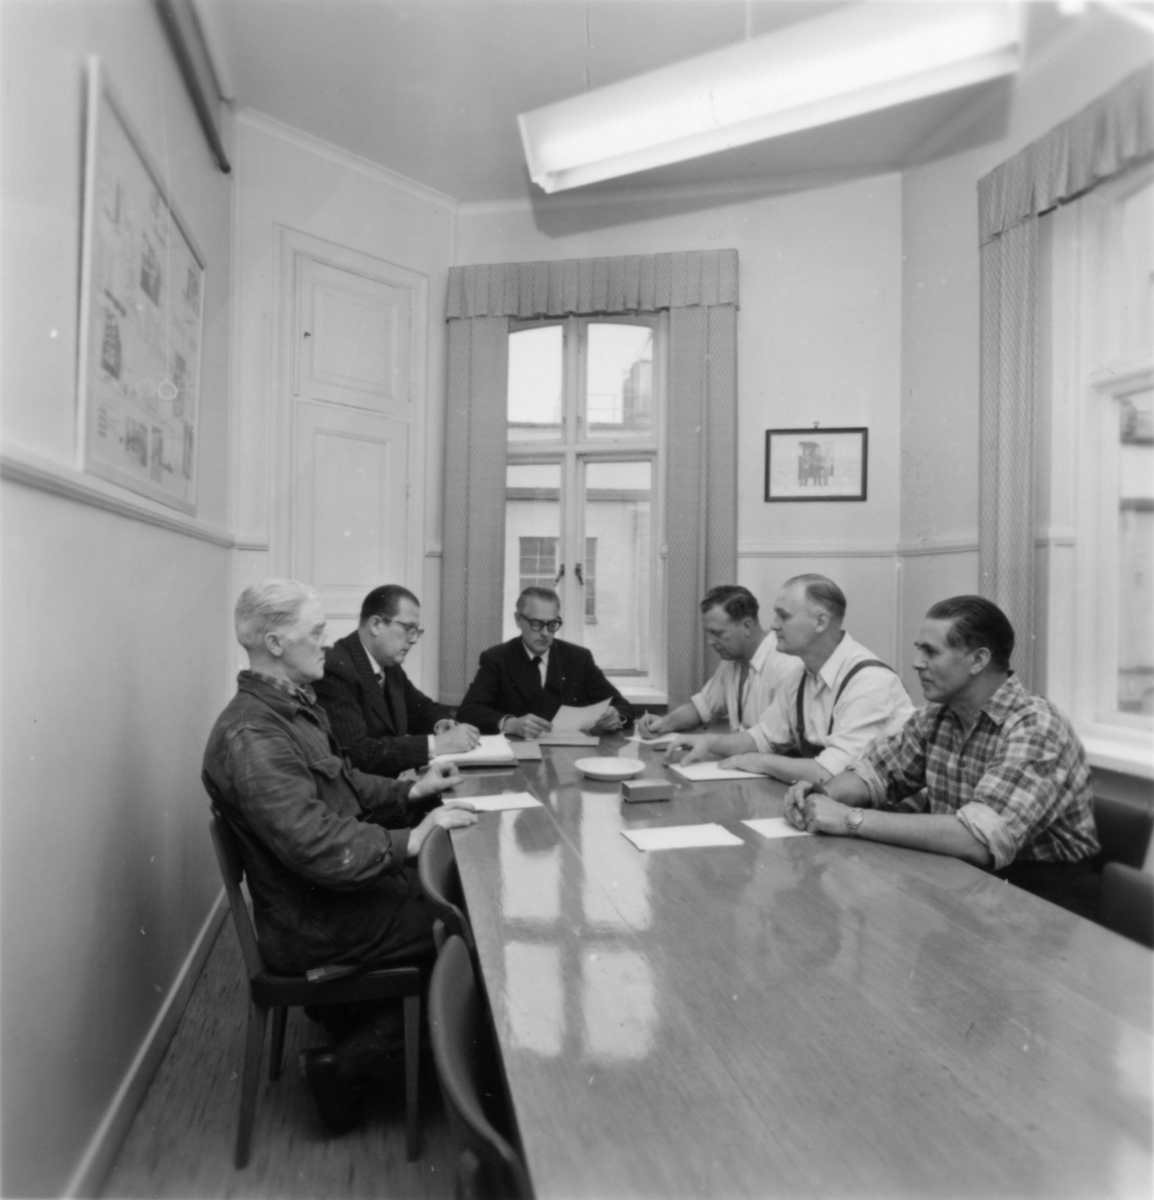 Förhandlingsdelegationen.
Tage Bernardtz, ingenjör Nils Cederhök, överingenjör William Tibell, Ture Nilsson, Rolf Andersson, Karl Magnusson.